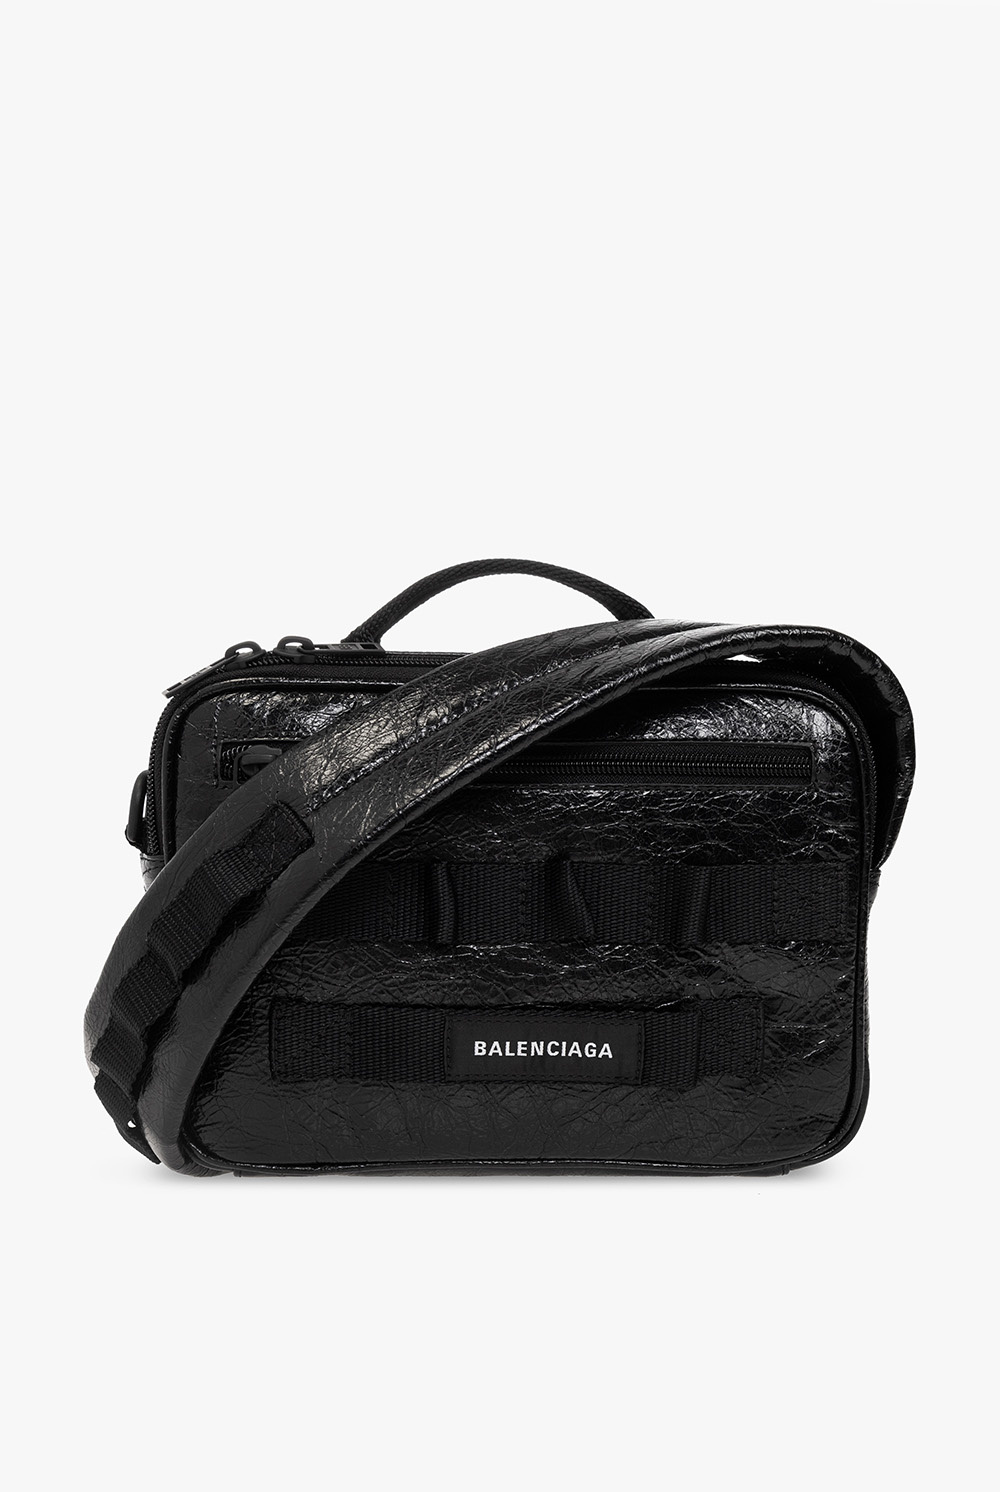 Tổng hợp hơn 56 về balenciaga army messenger bag mới nhất - f5 fashion